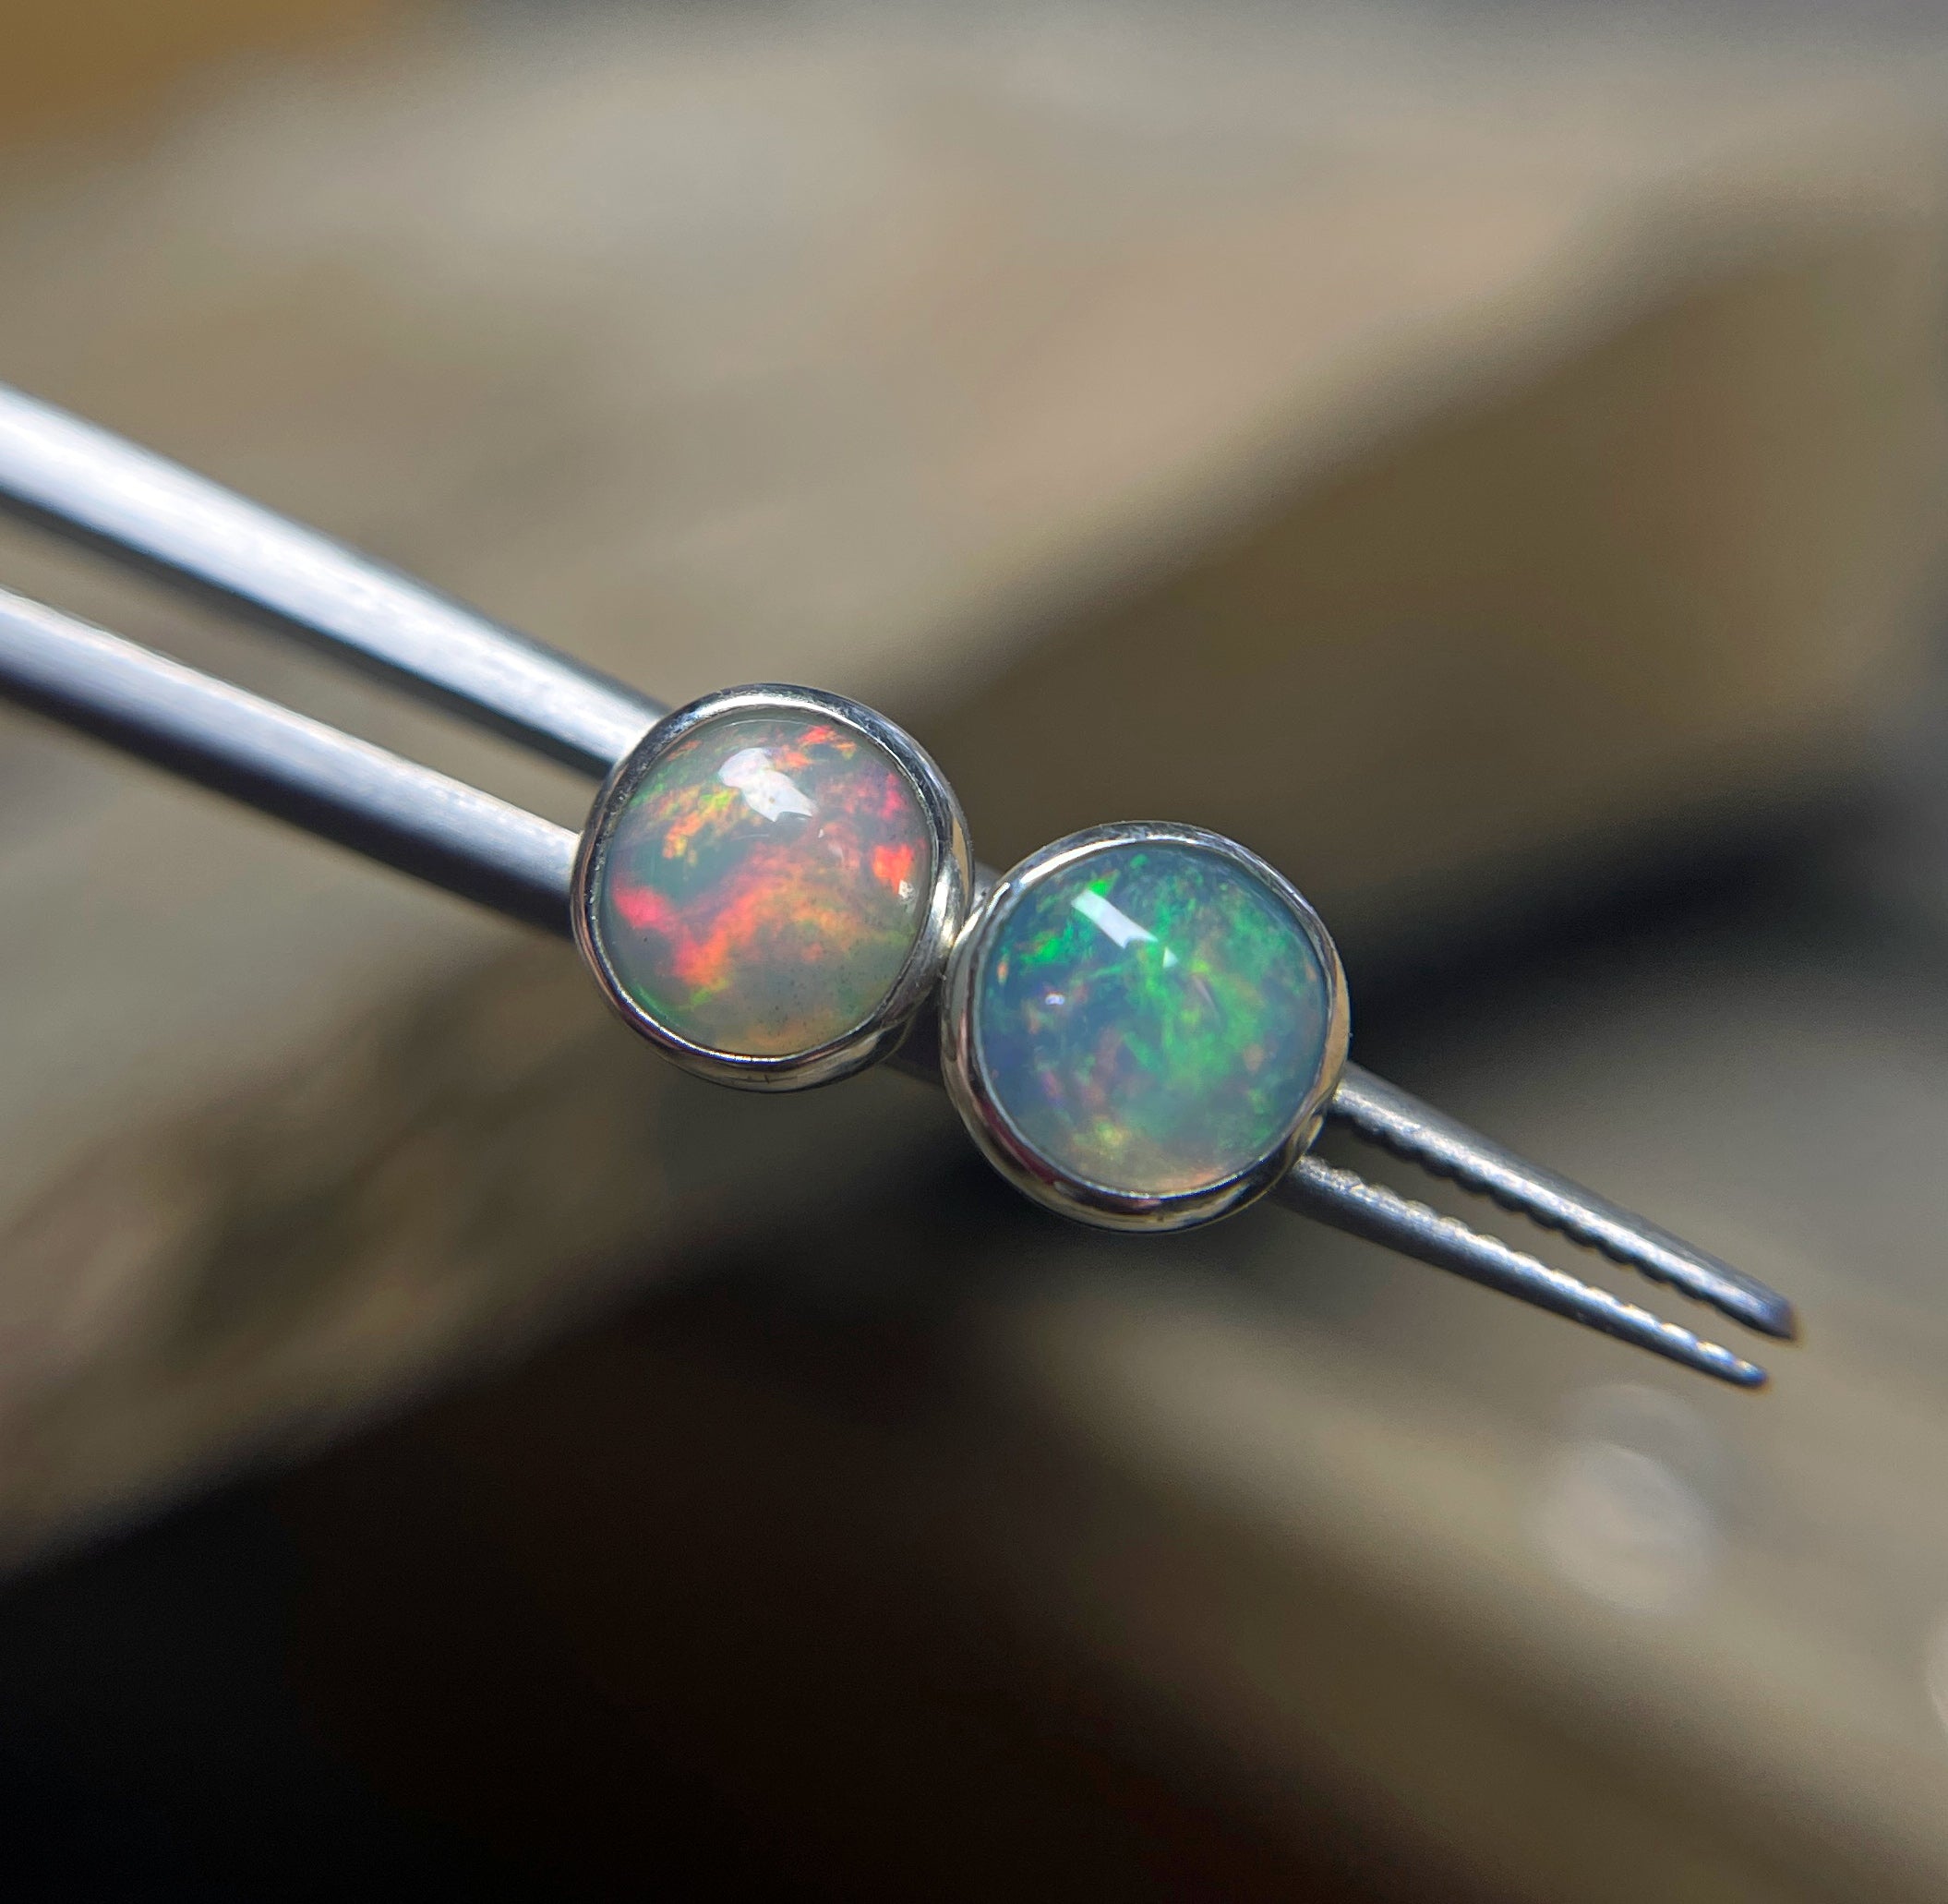 Opal Earrings Stud in Sterling Silver 6mm, Ethiopian Opal Earrings, Sterling Silver Studs, Gemstone Earrings, Small Gemstone Stud Earrings